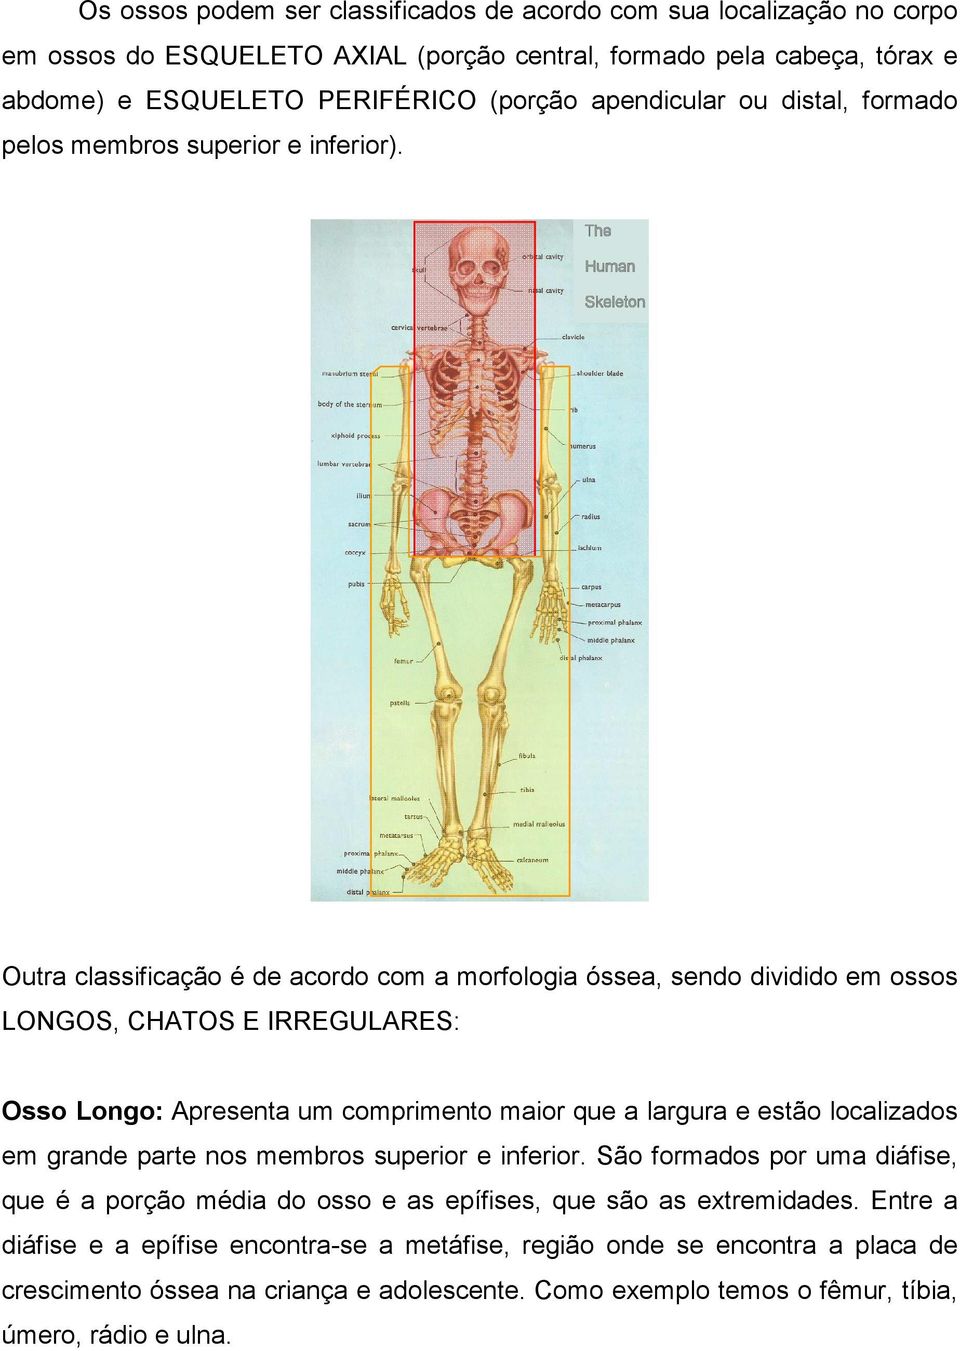 Outra classificação é de acordo com a morfologia óssea, sendo dividido em ossos LONGOS, CHATOS E IRREGULARES: Osso Longo: Apresenta um comprimento maior que a largura e estão localizados em